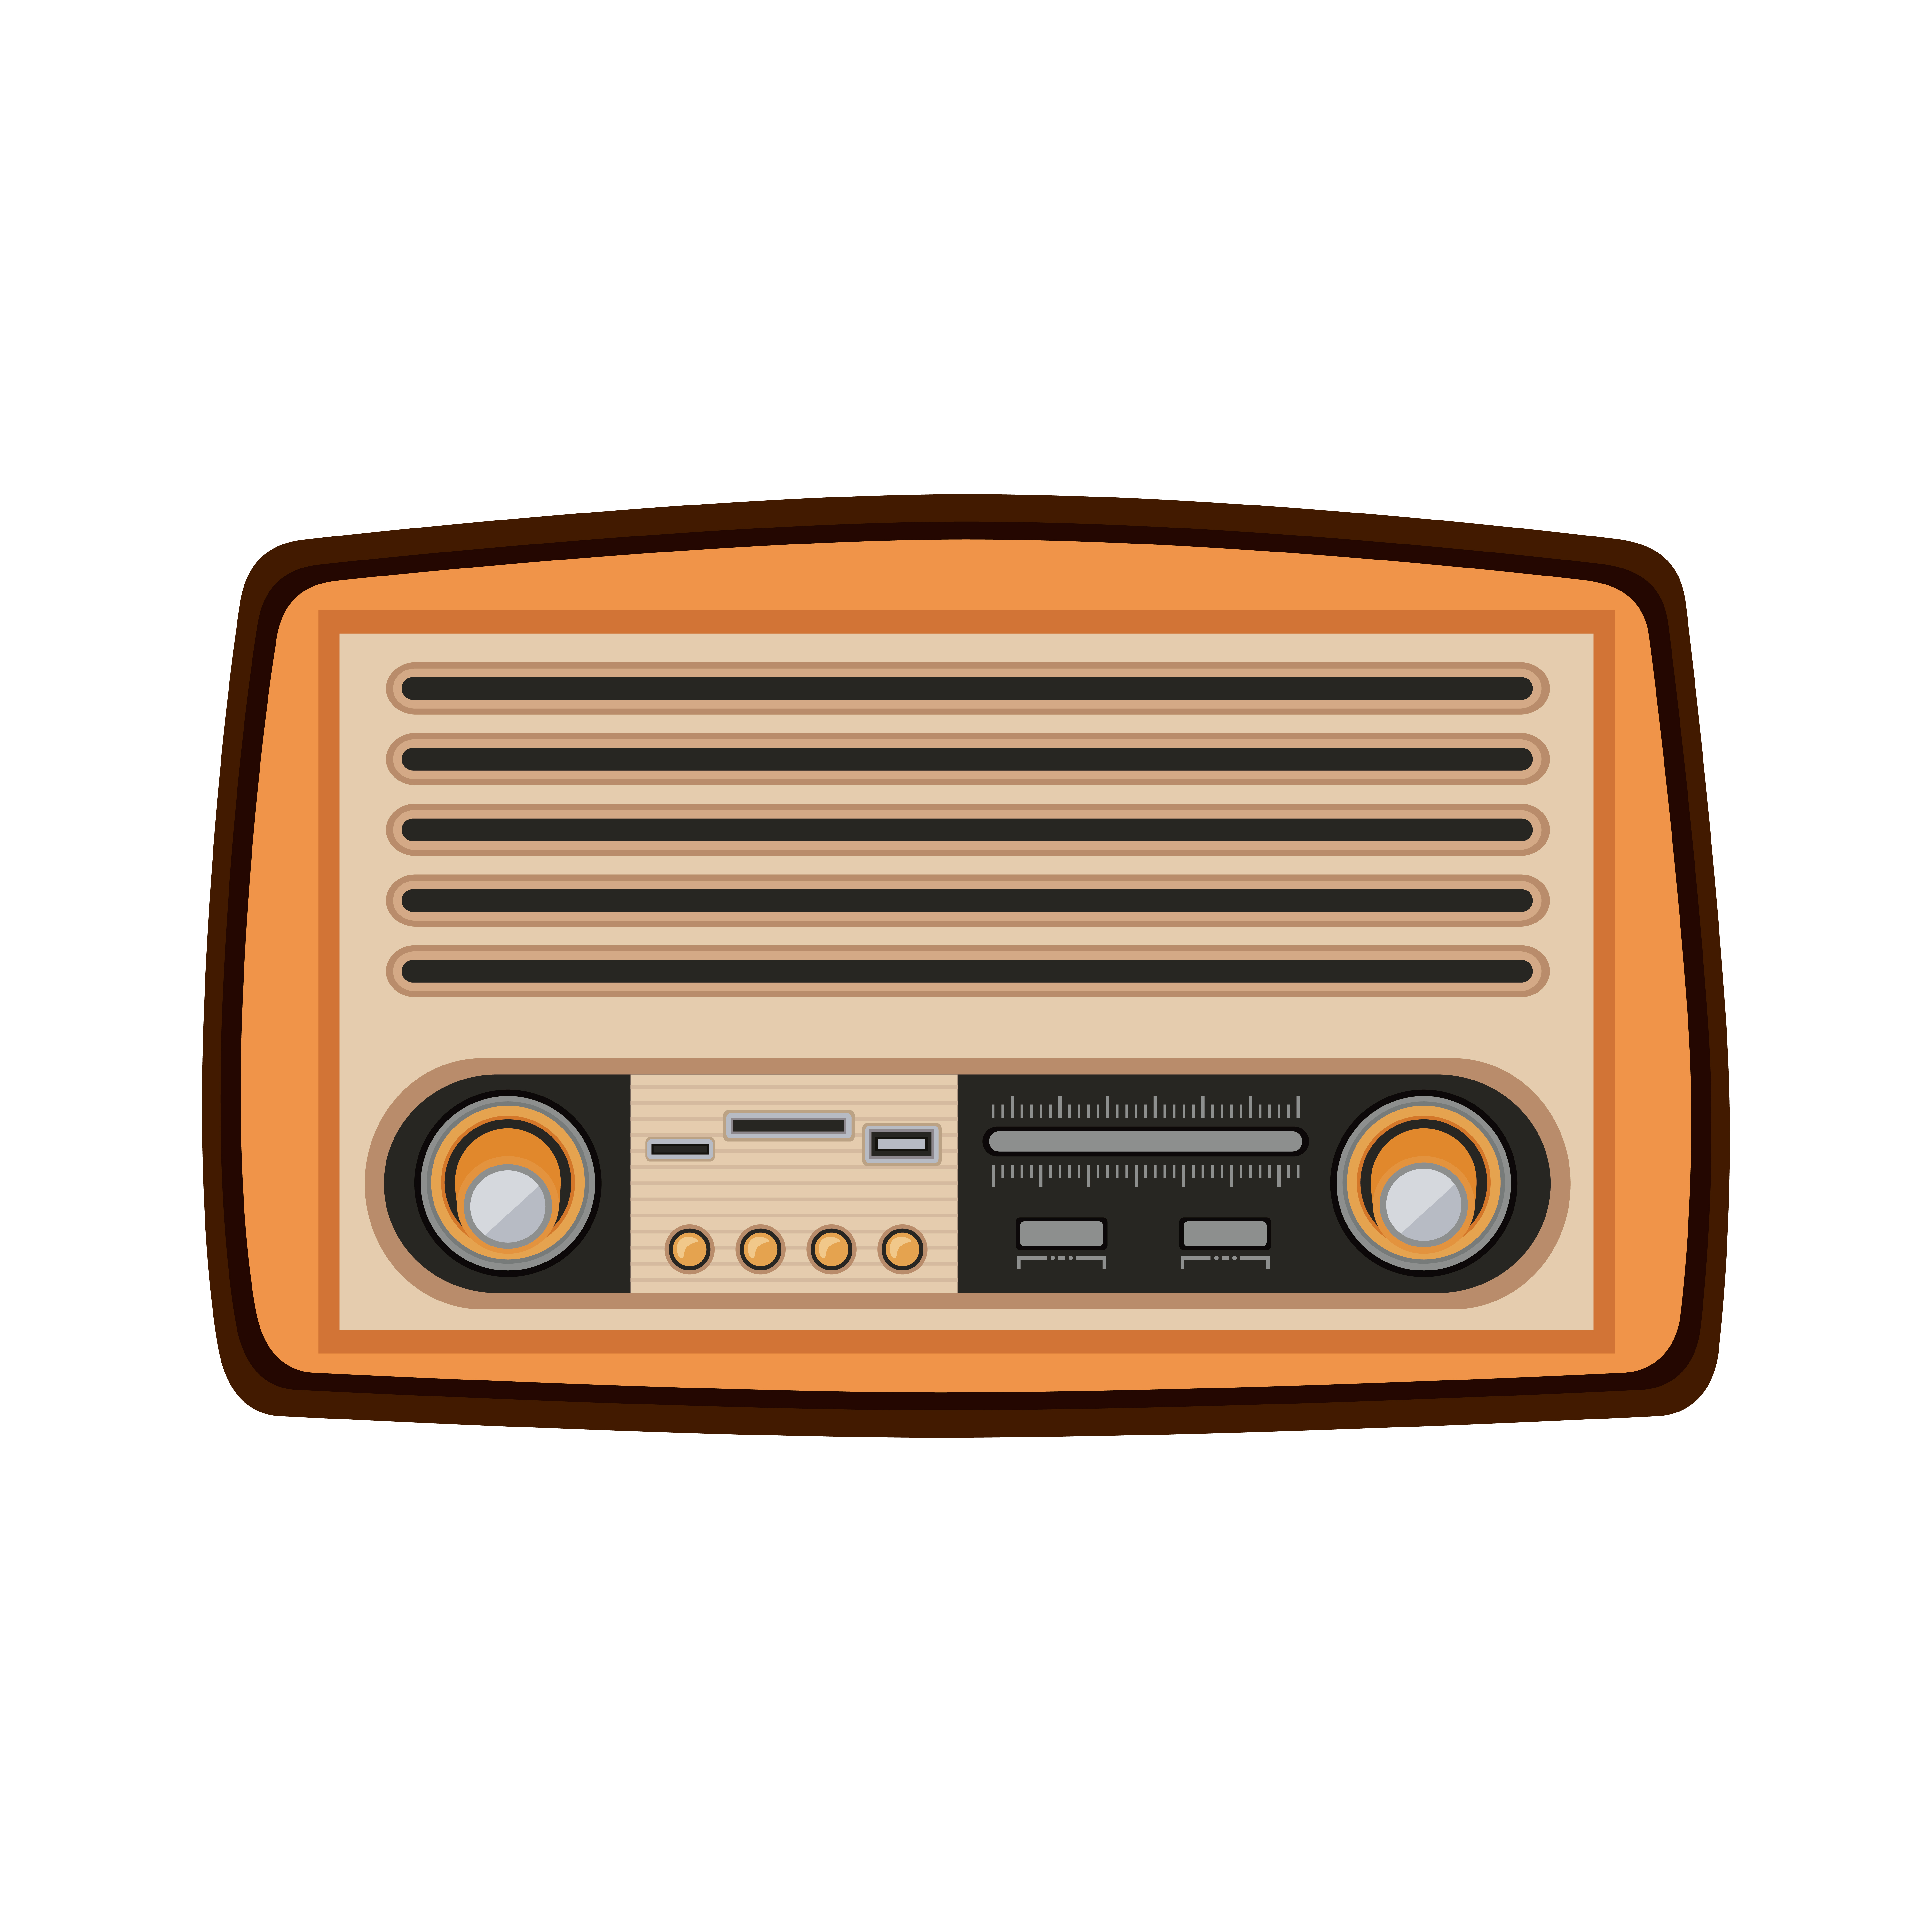 Old radio vintage retro symbol Royalty Free Vector Image